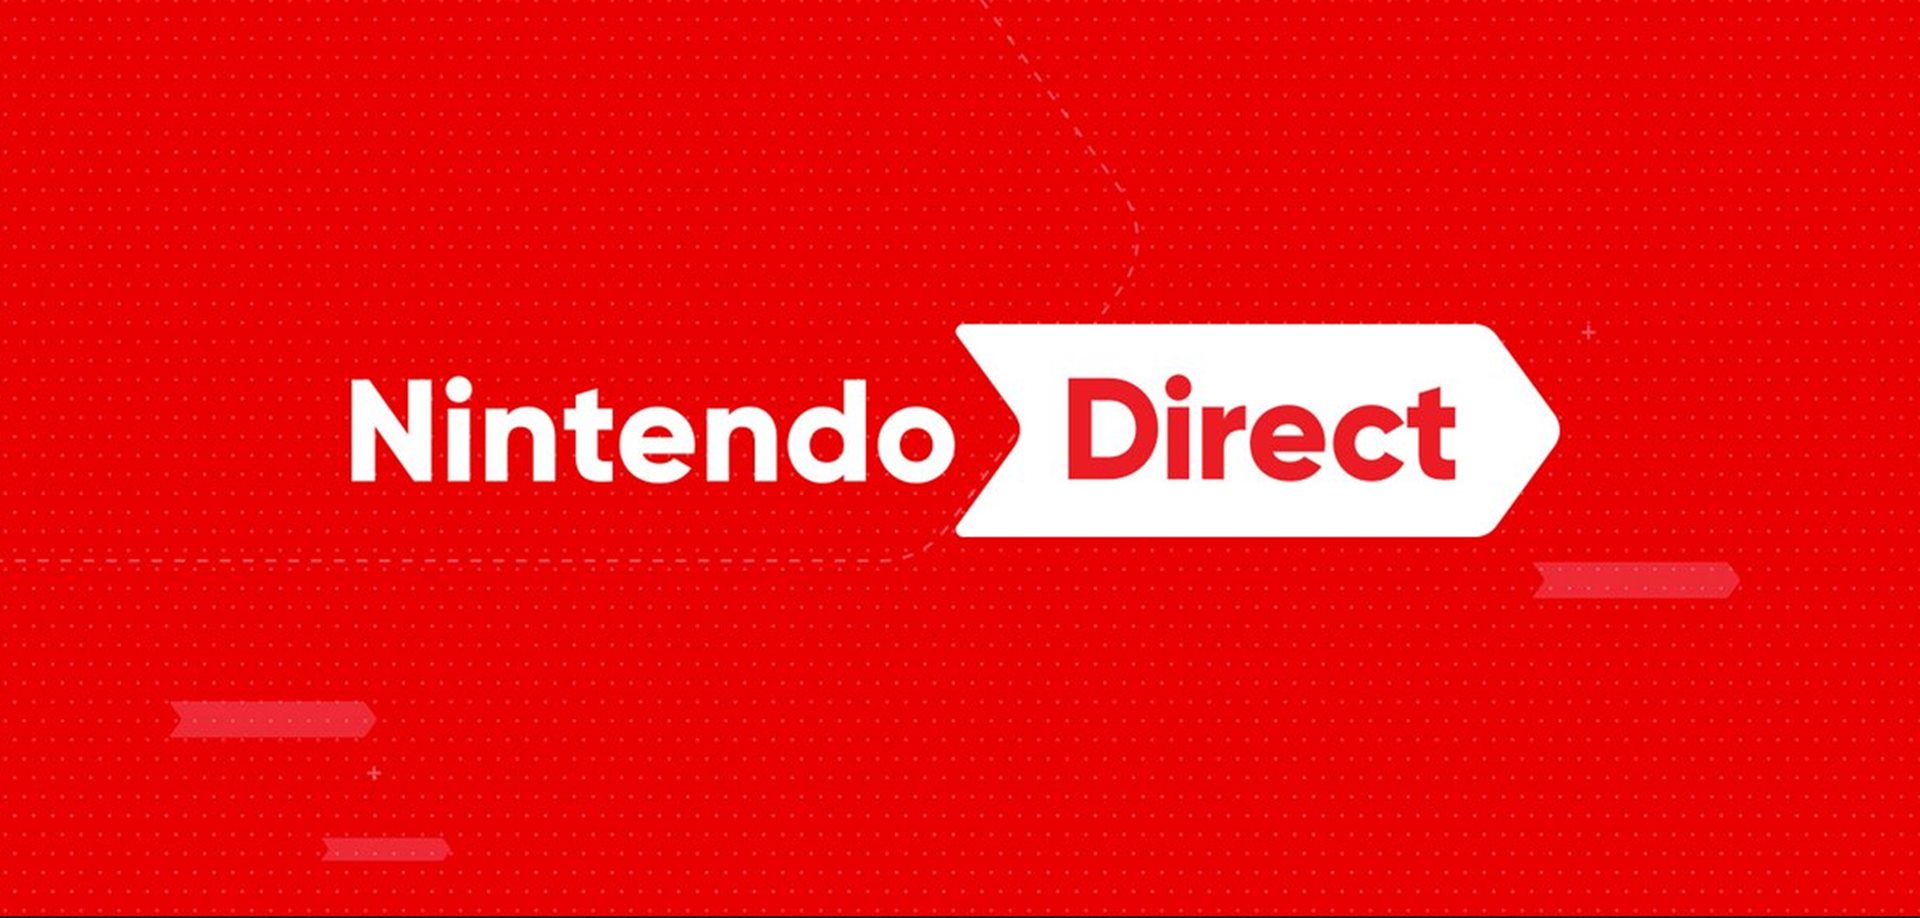 ข่าวลือปู่นินเตรียมจัดงาน Nintendo Direct ปลายเดือนมิถุนายน นี้